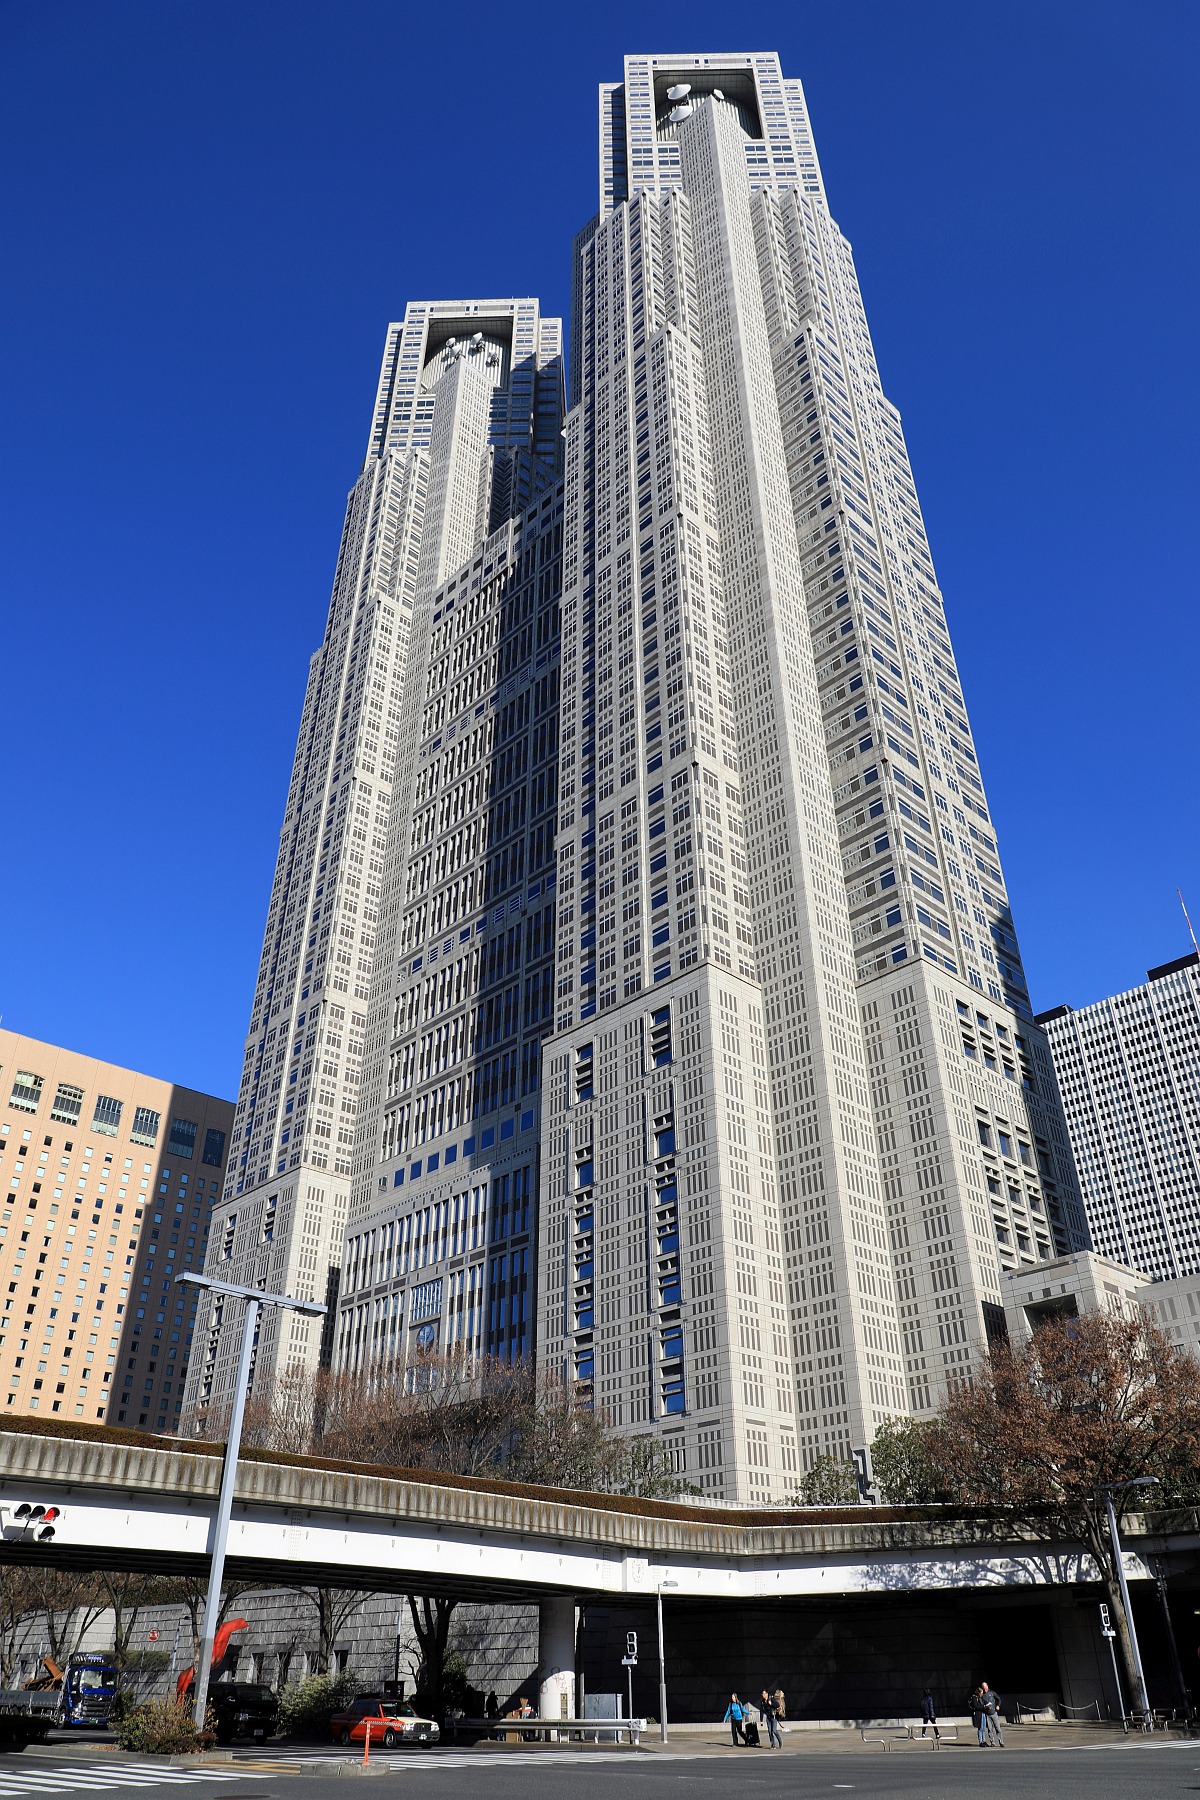 東京都庁第一本庁舎 超高層マンション 超高層ビル